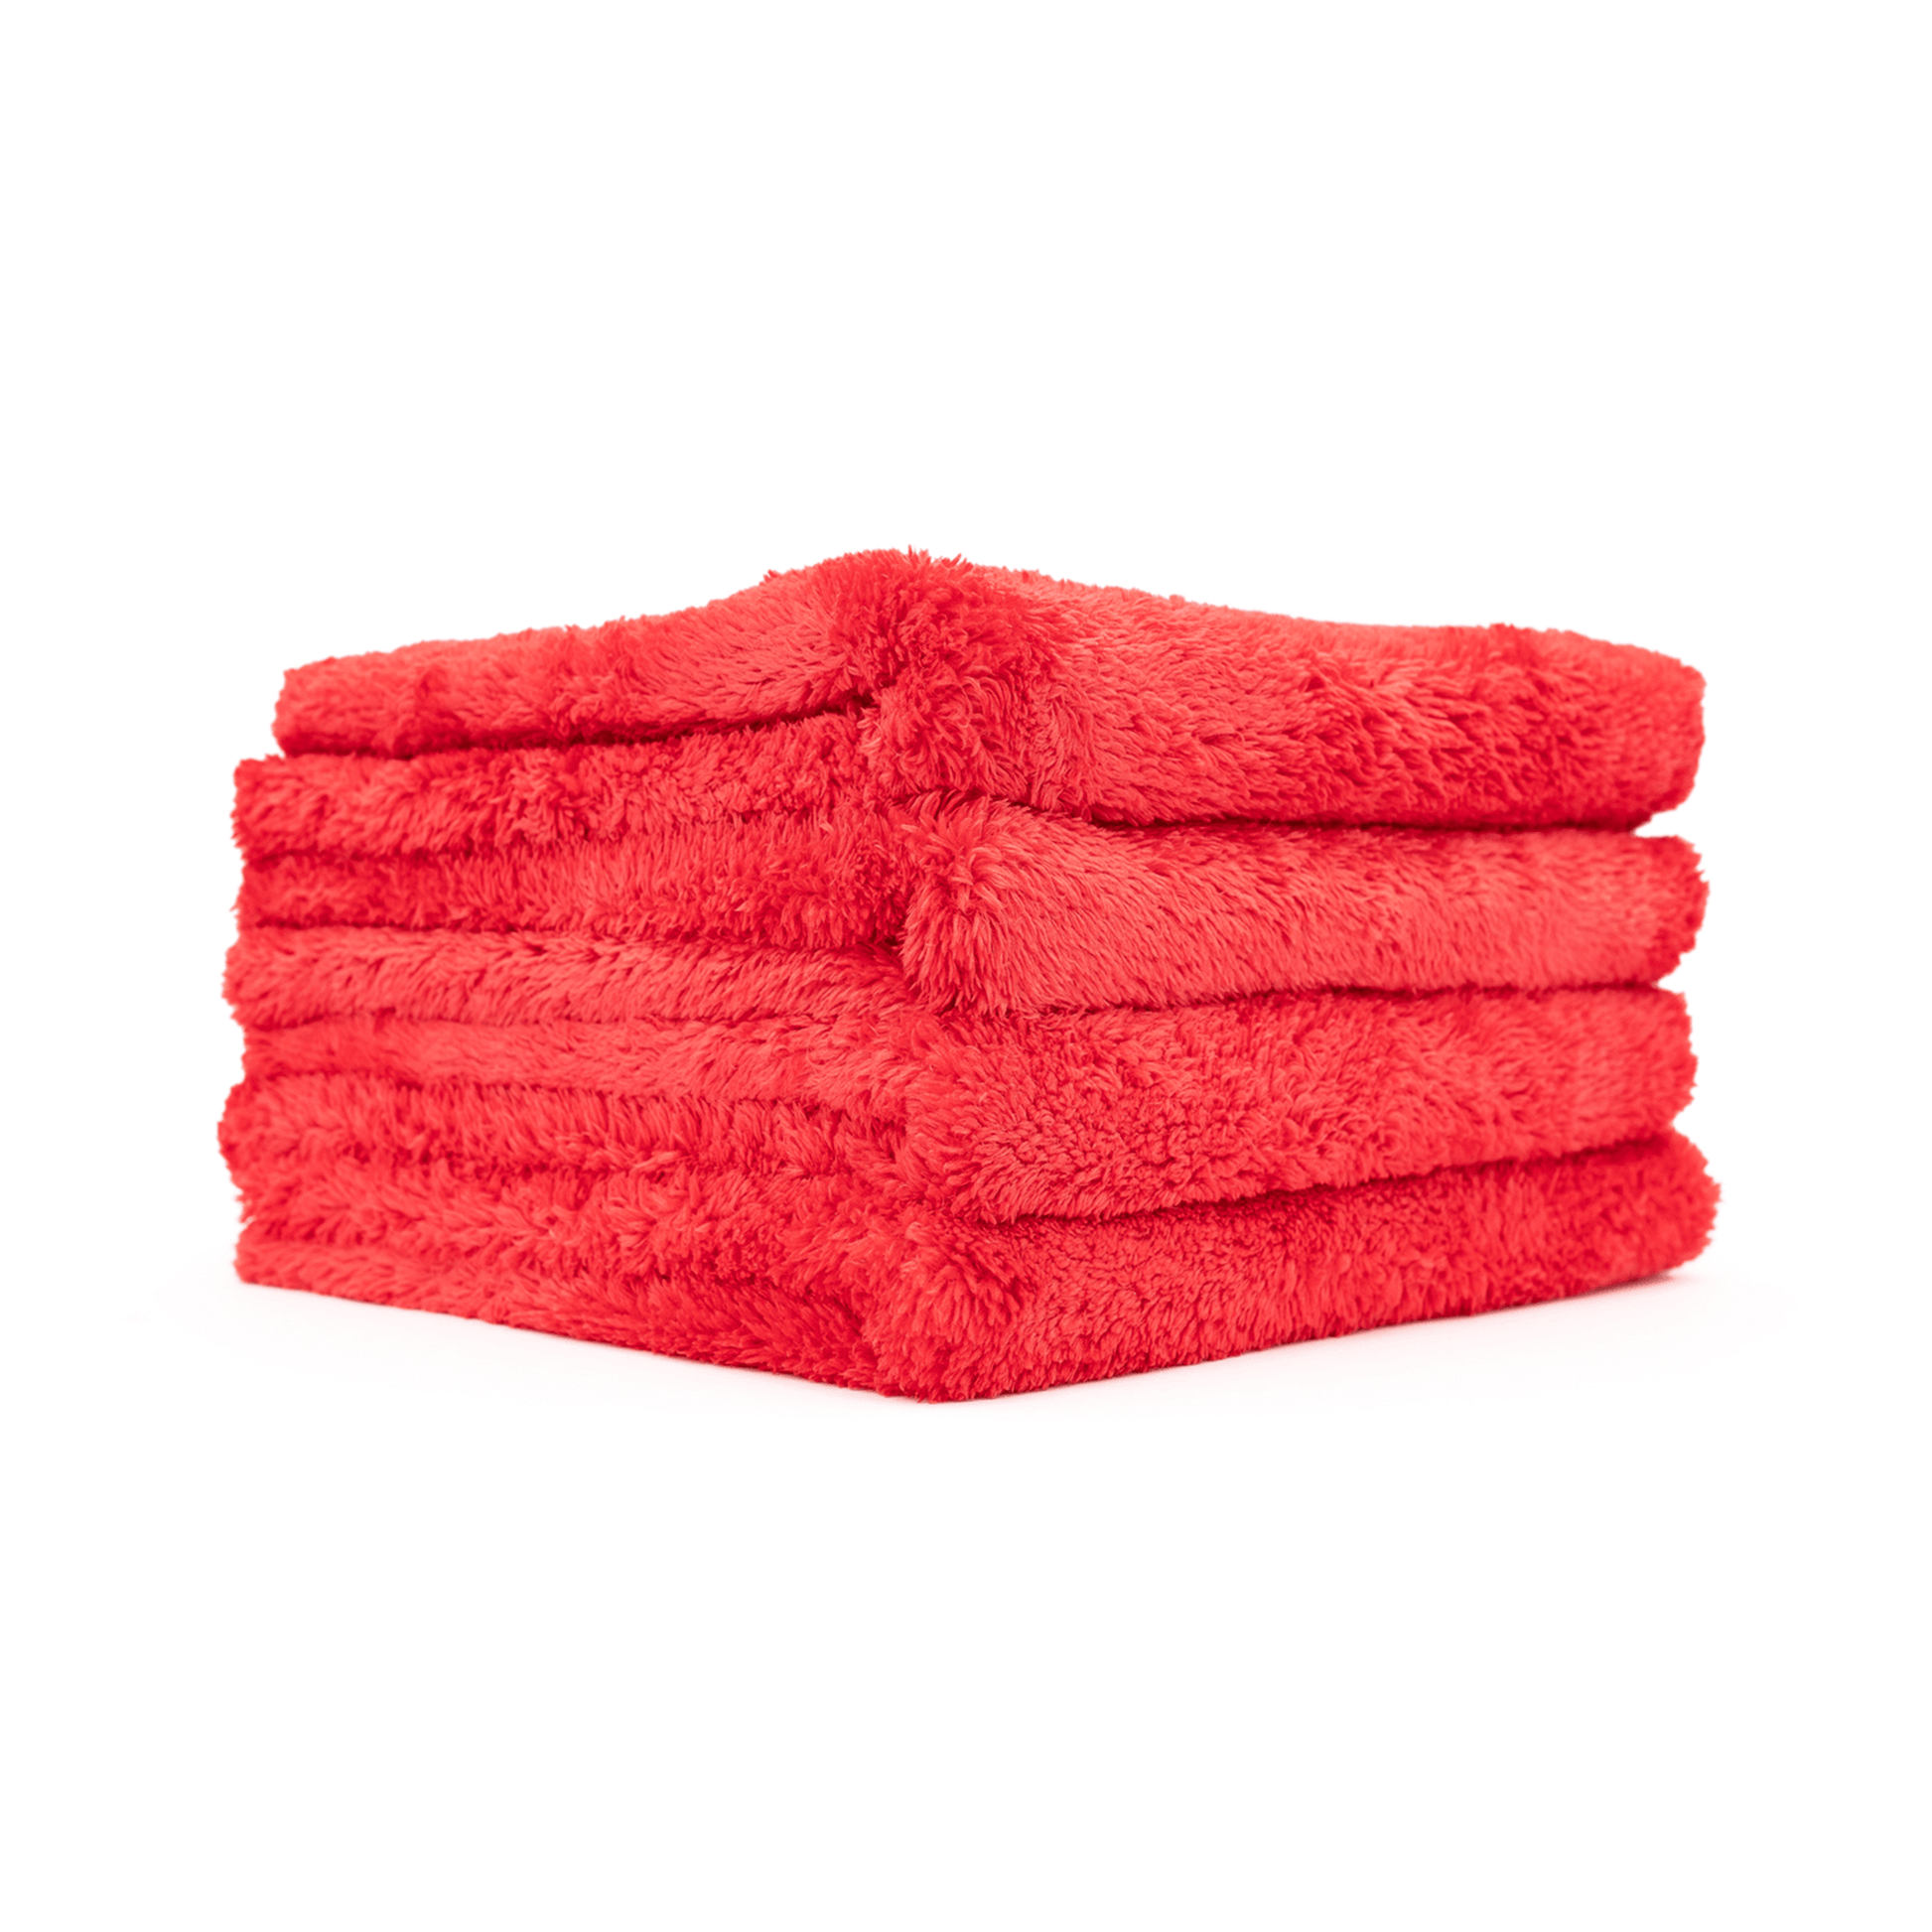 Microfiber Towel Red